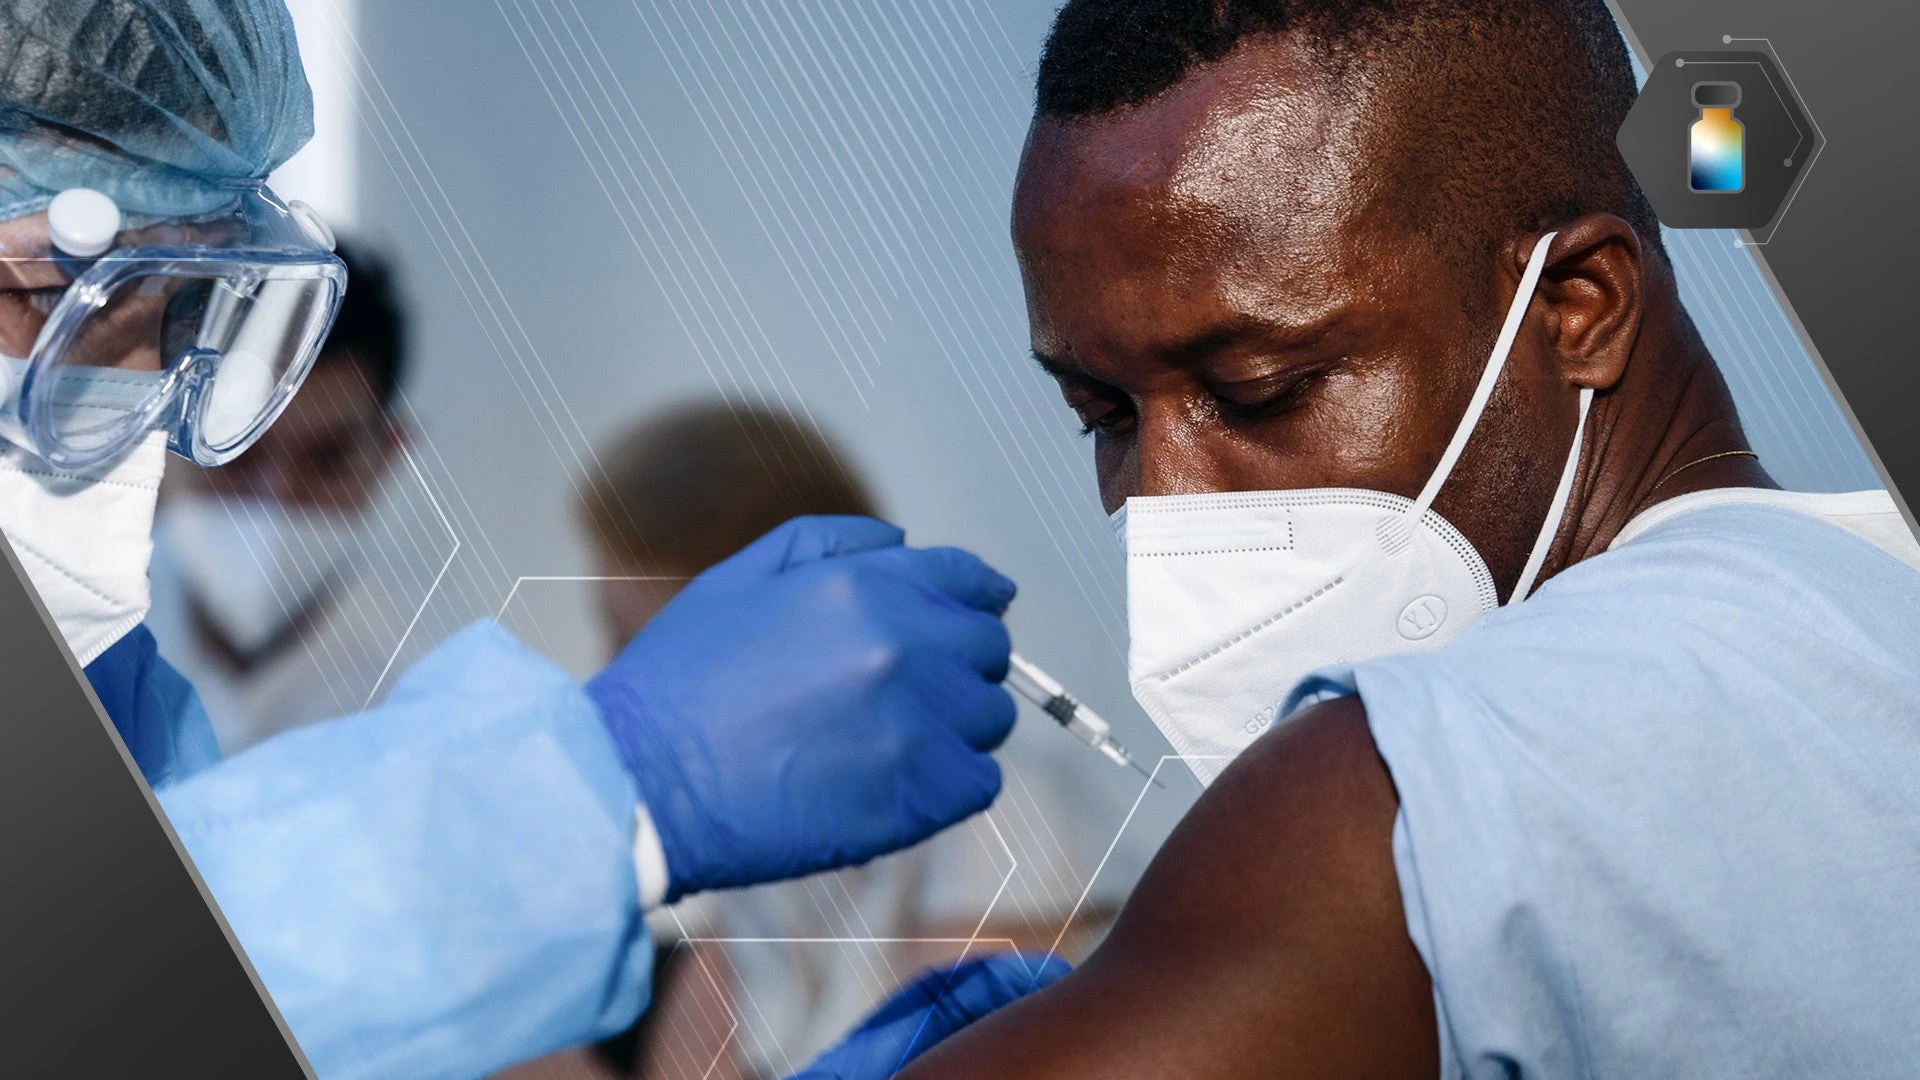 Acelerar el acceso equitativo a las vacunas es esencial para la recuperación económica y salvar vidas en África. Fotografía: Mongkolchon Akesin/Shutterstock.